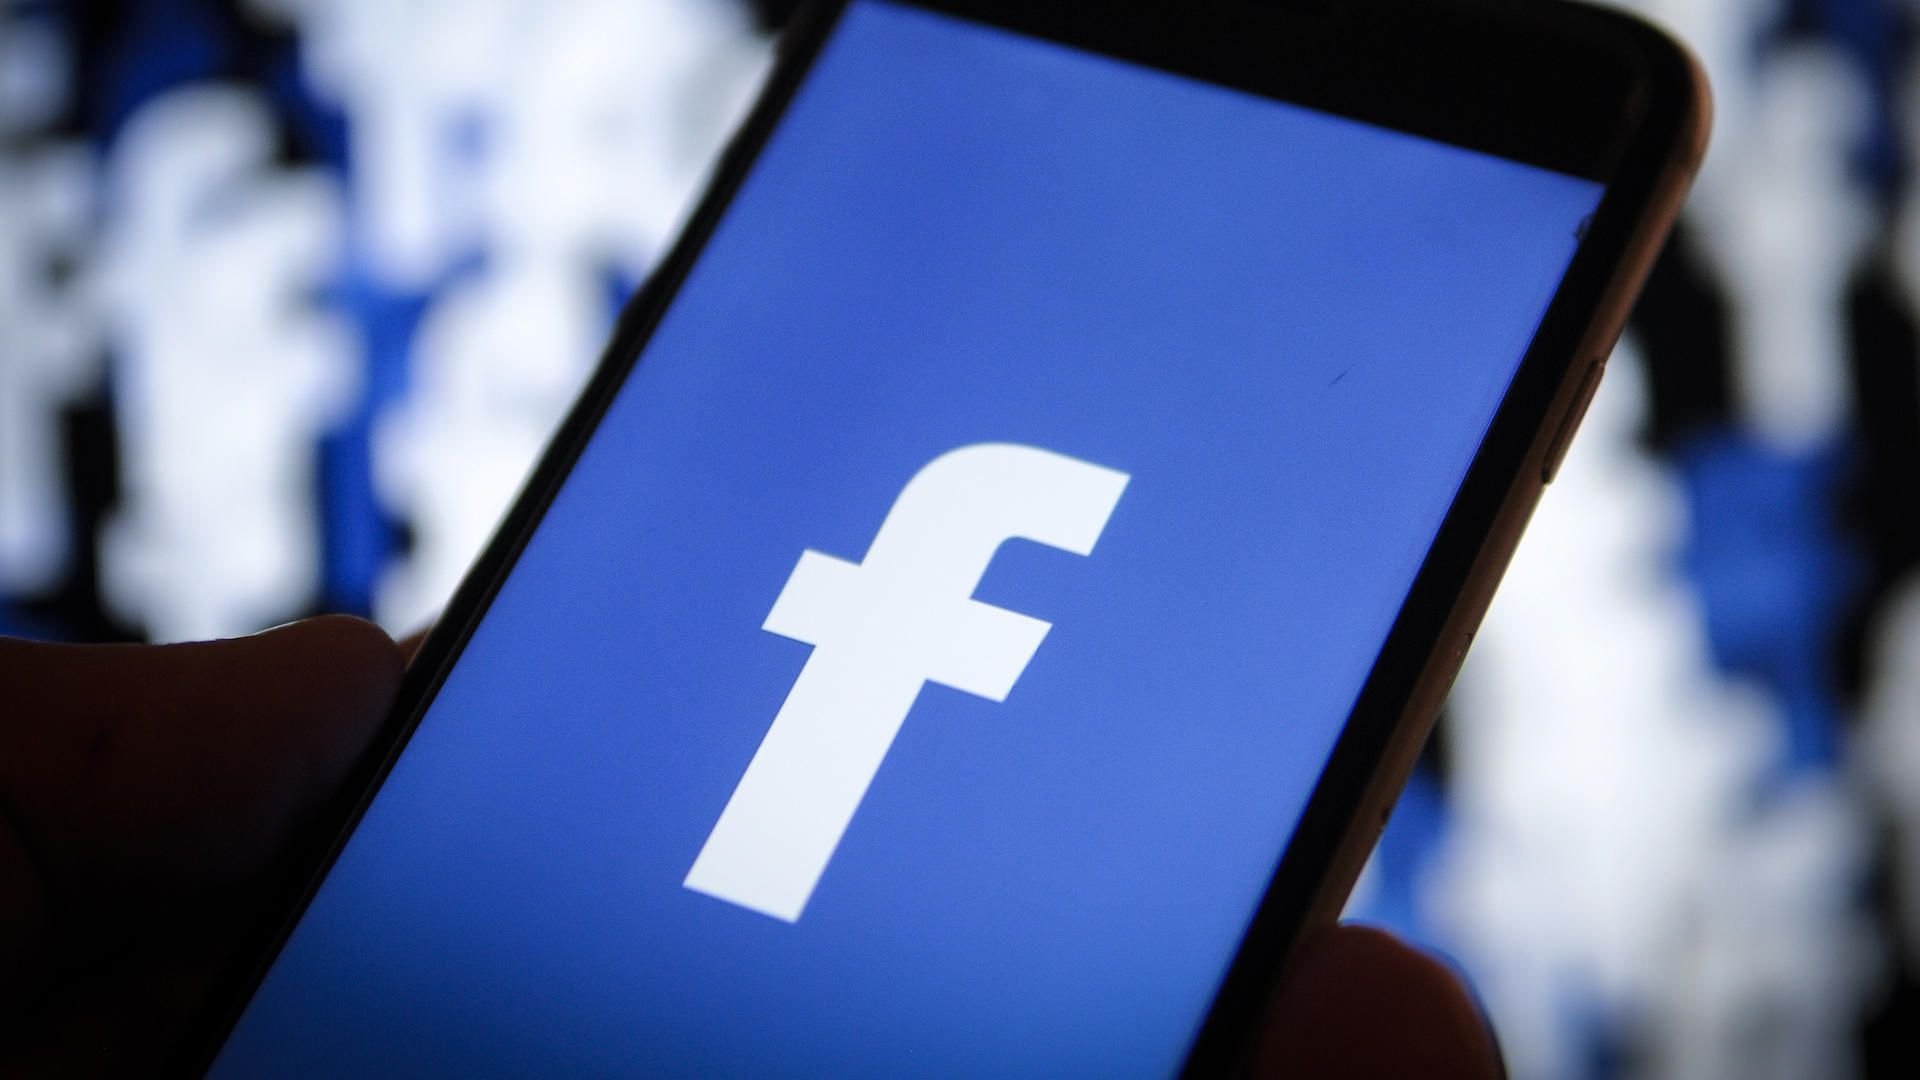  Facebook este acuzată de o fostă angajată că nu protejează moderatorii de conţinut